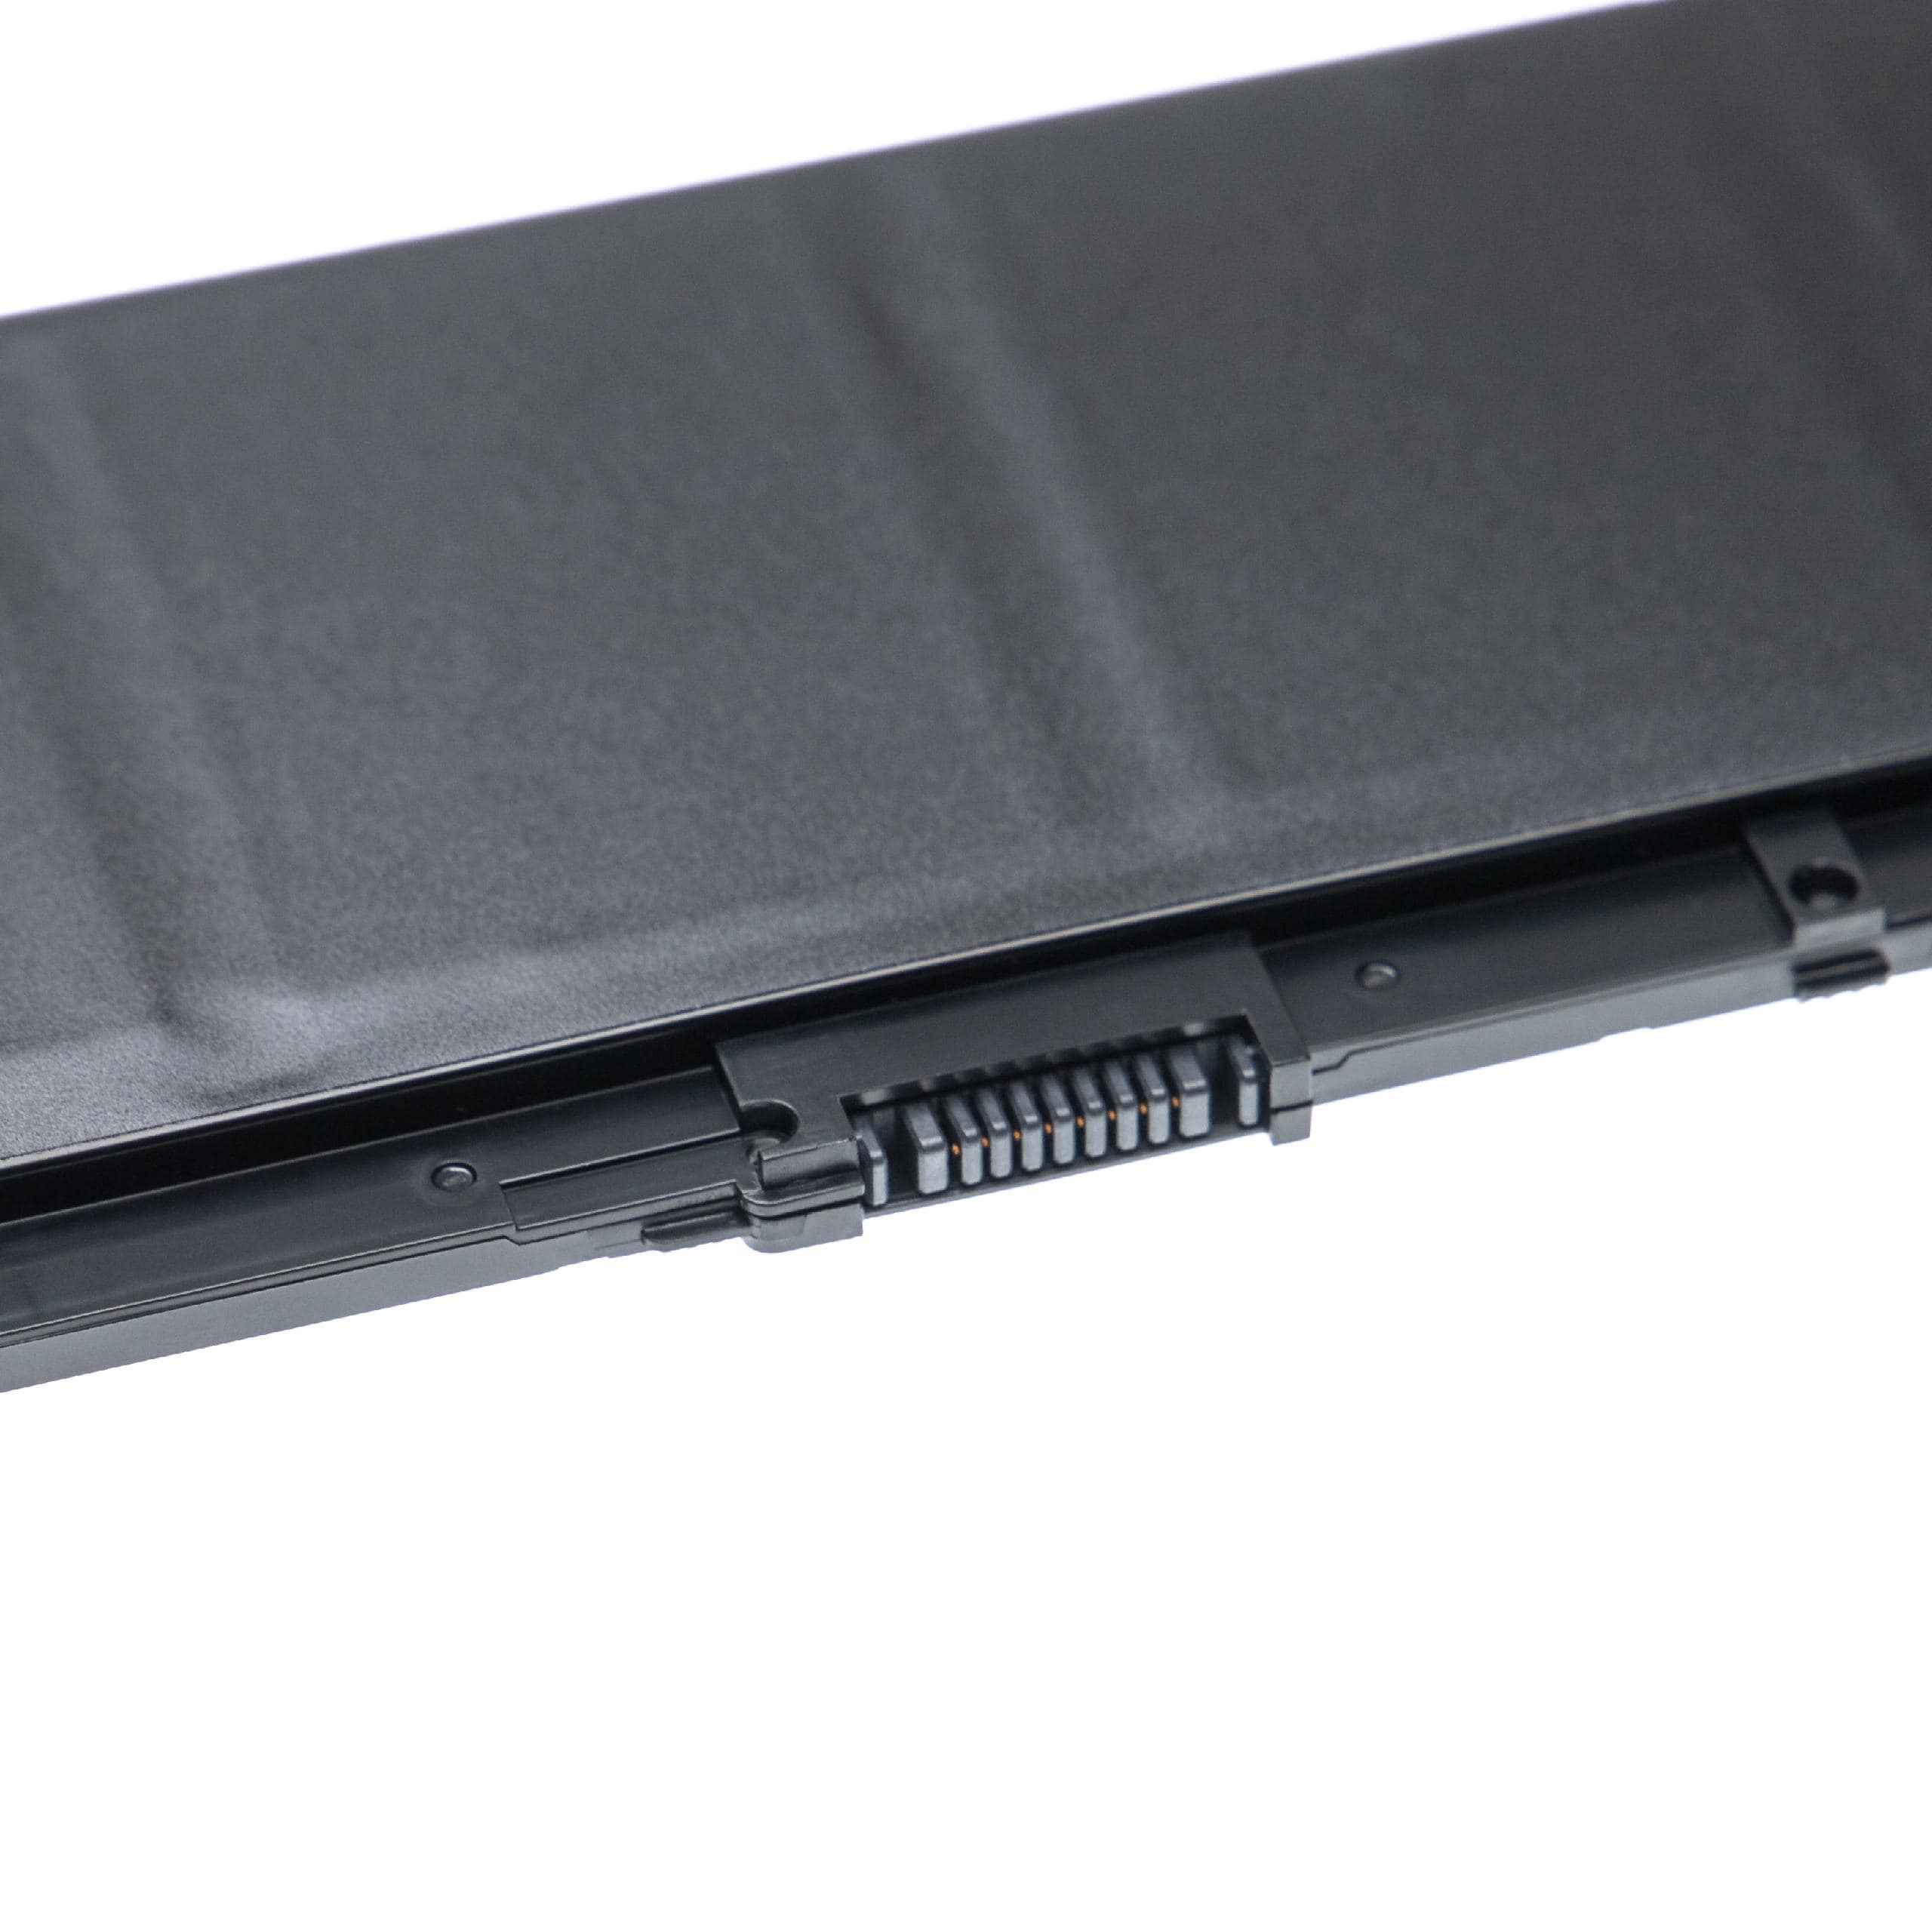 Batterie remplace HP 917678-1B1, 916678-171 pour ordinateur portable - 4400mAh 15,4V Li-polymère, noir